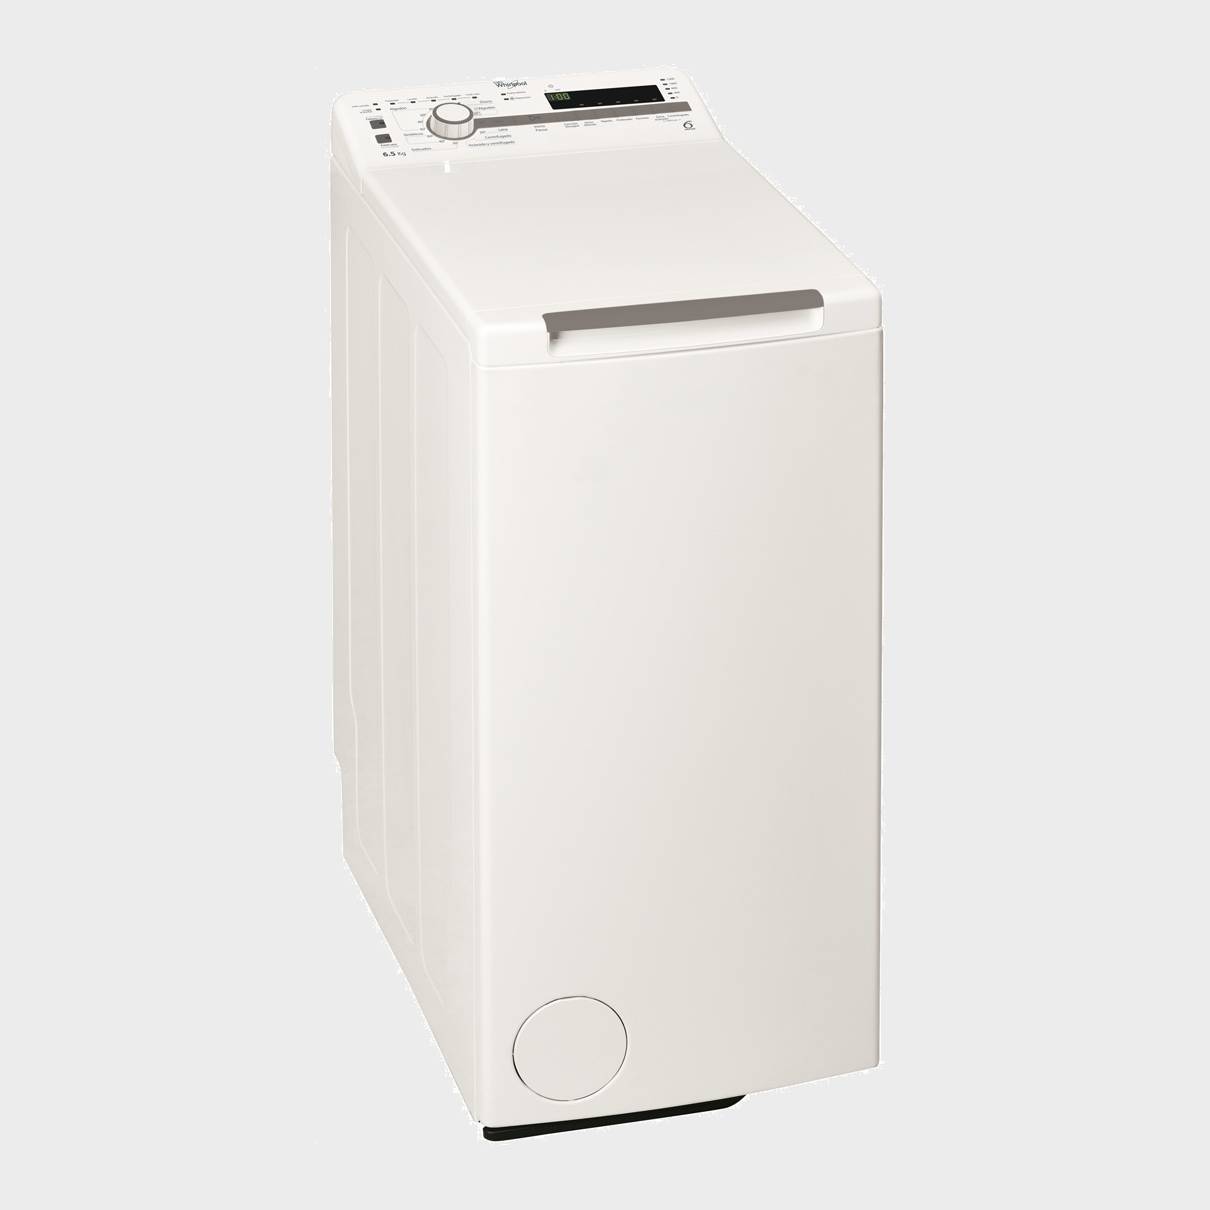 Whirlpool Tdlr65210 lavadora carga superior 6,5kg 1200 rpm